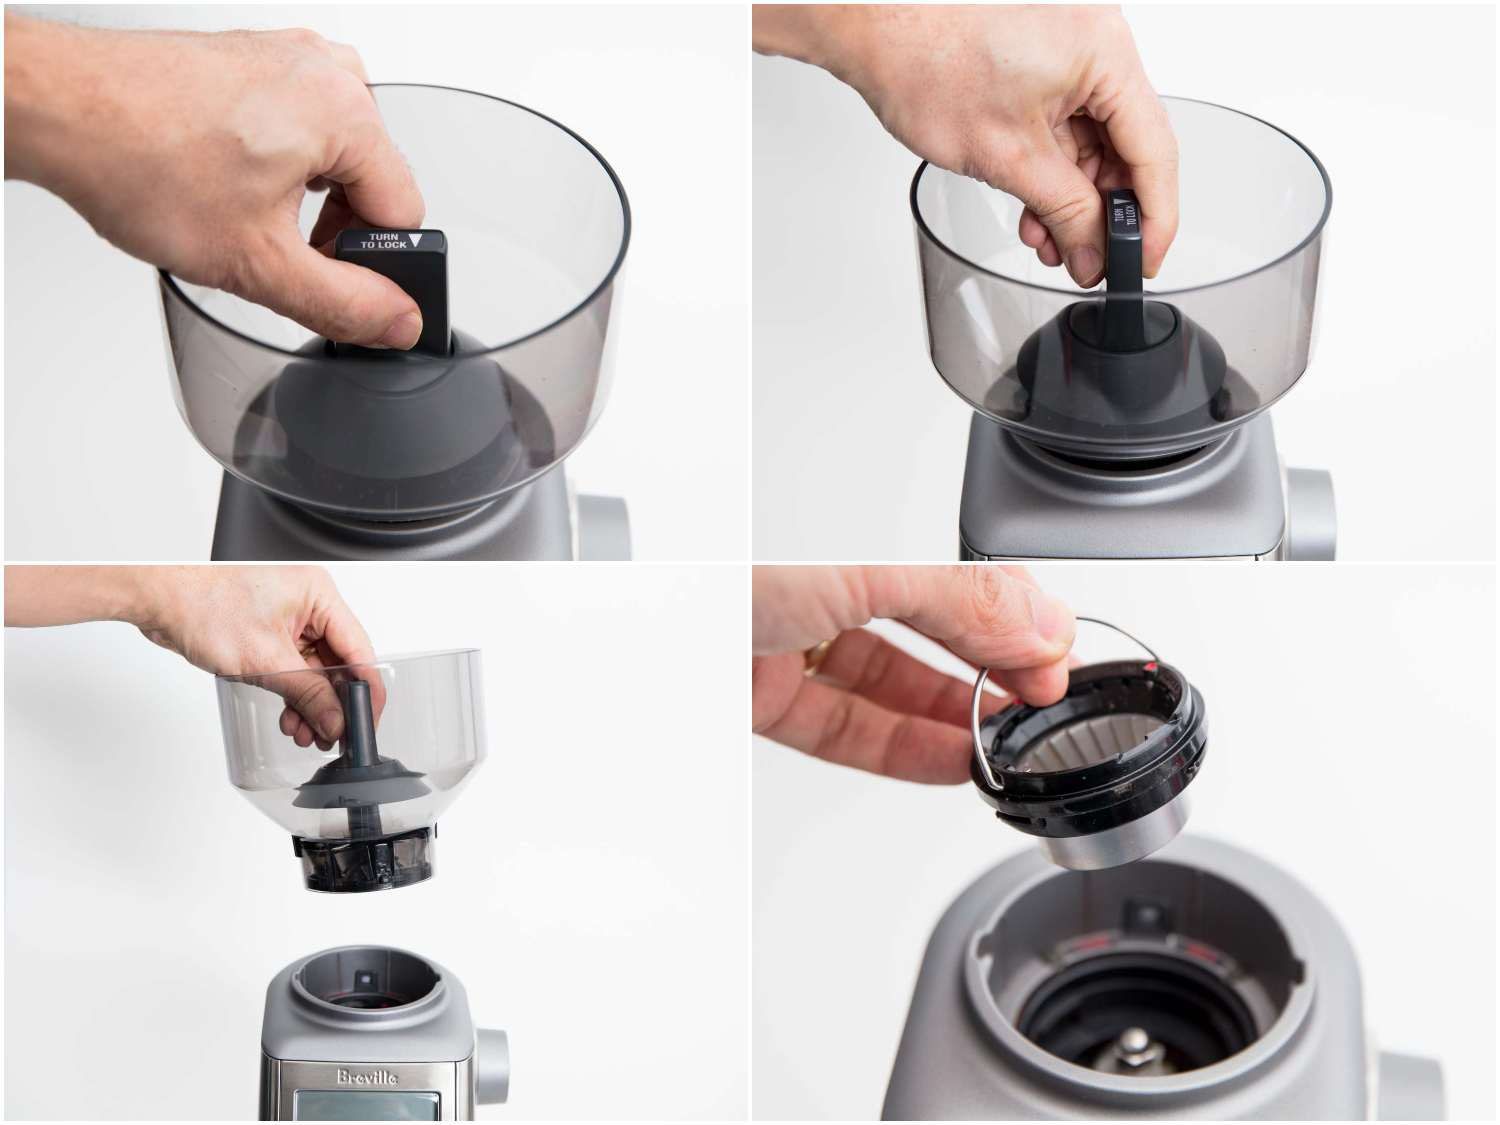 布雷维尔咖啡研磨机的易于使用料斗和毛刺总成